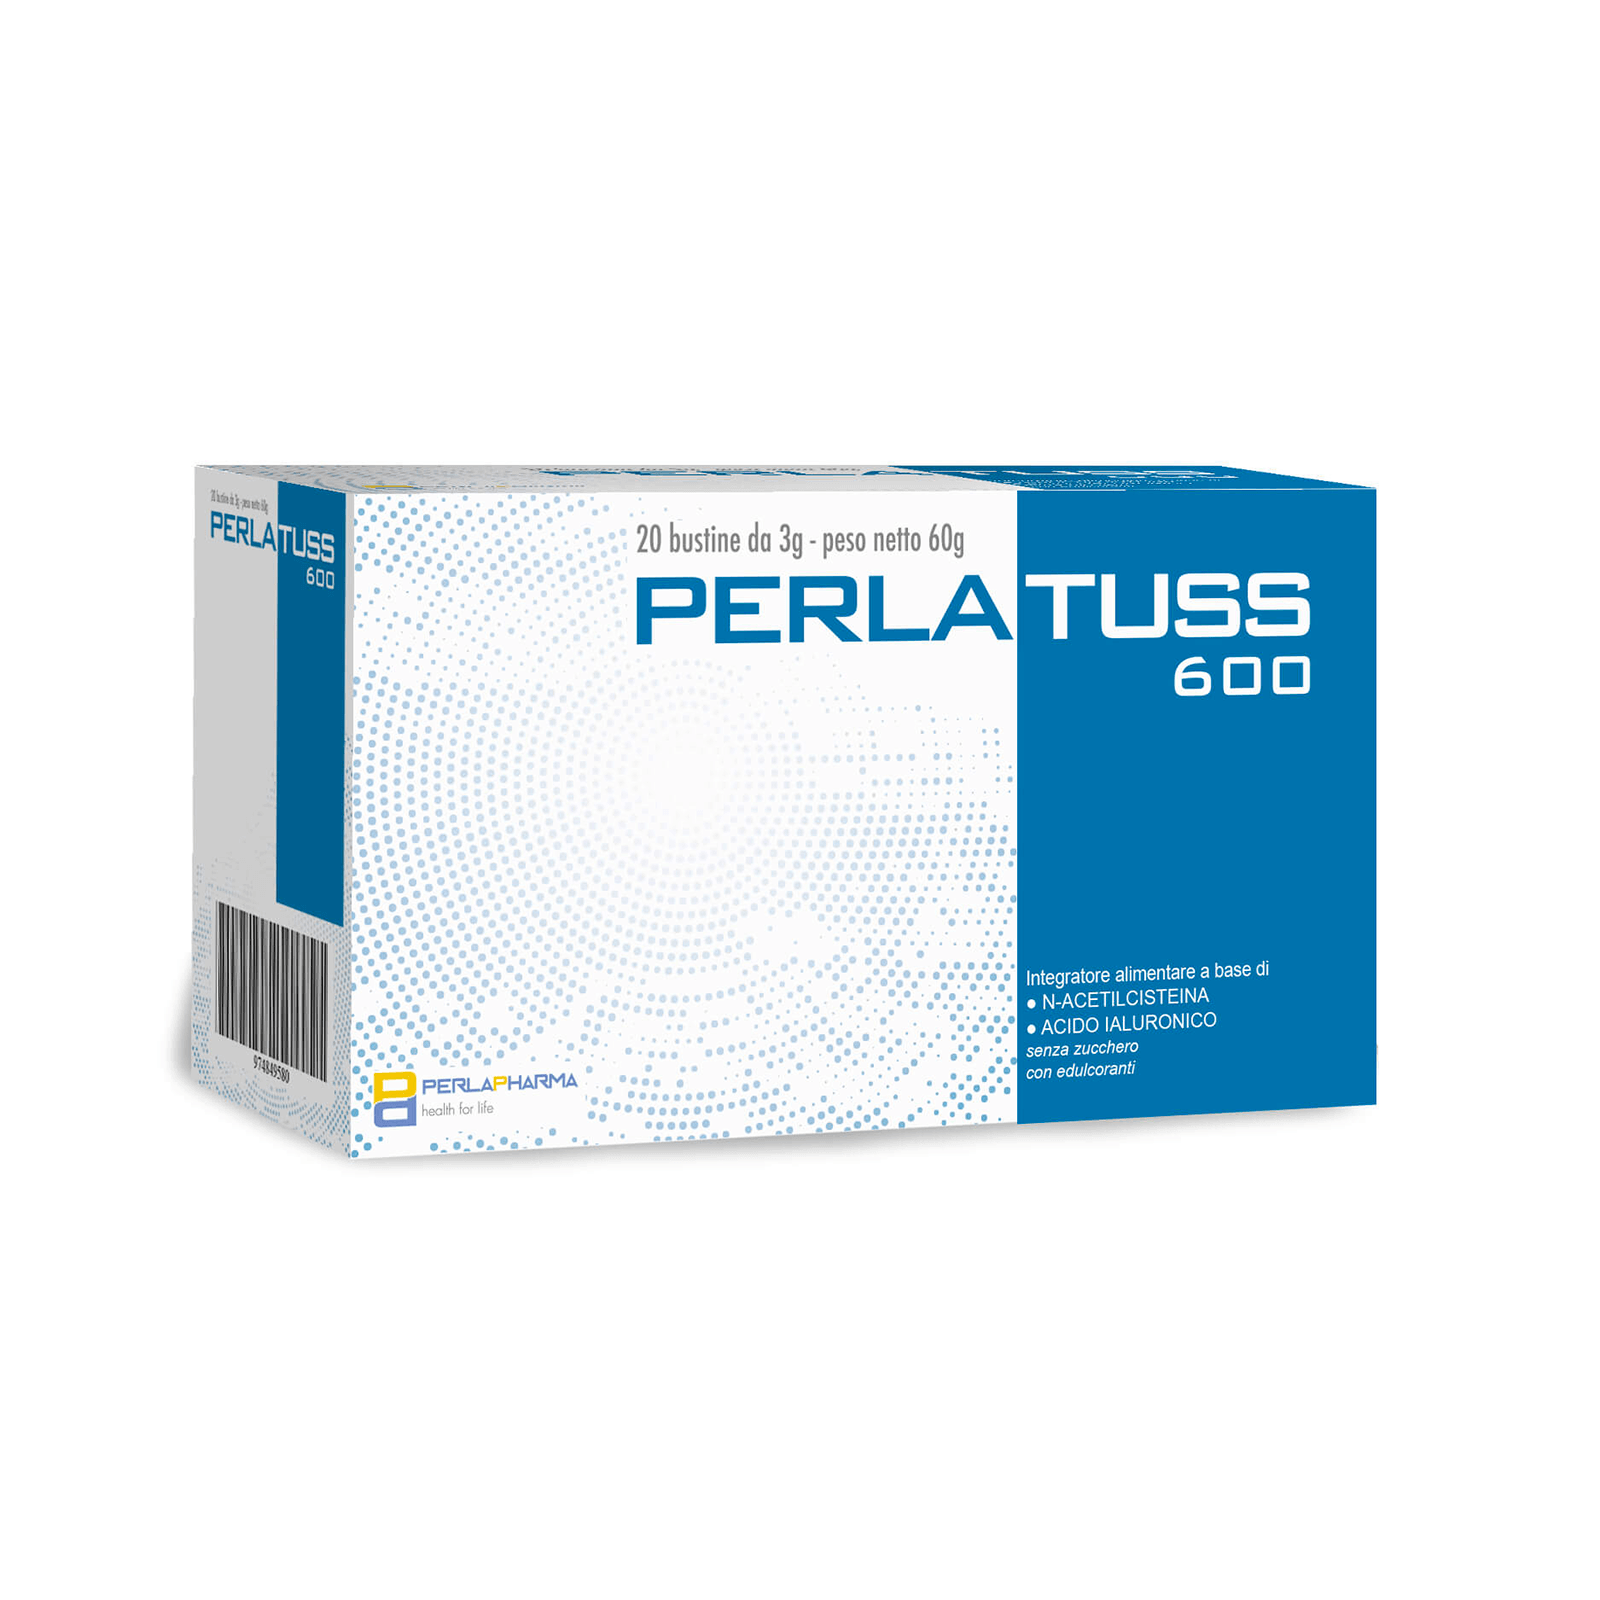 Image of Perlatuss 600 Perla Pharma(R) 20 Bustine